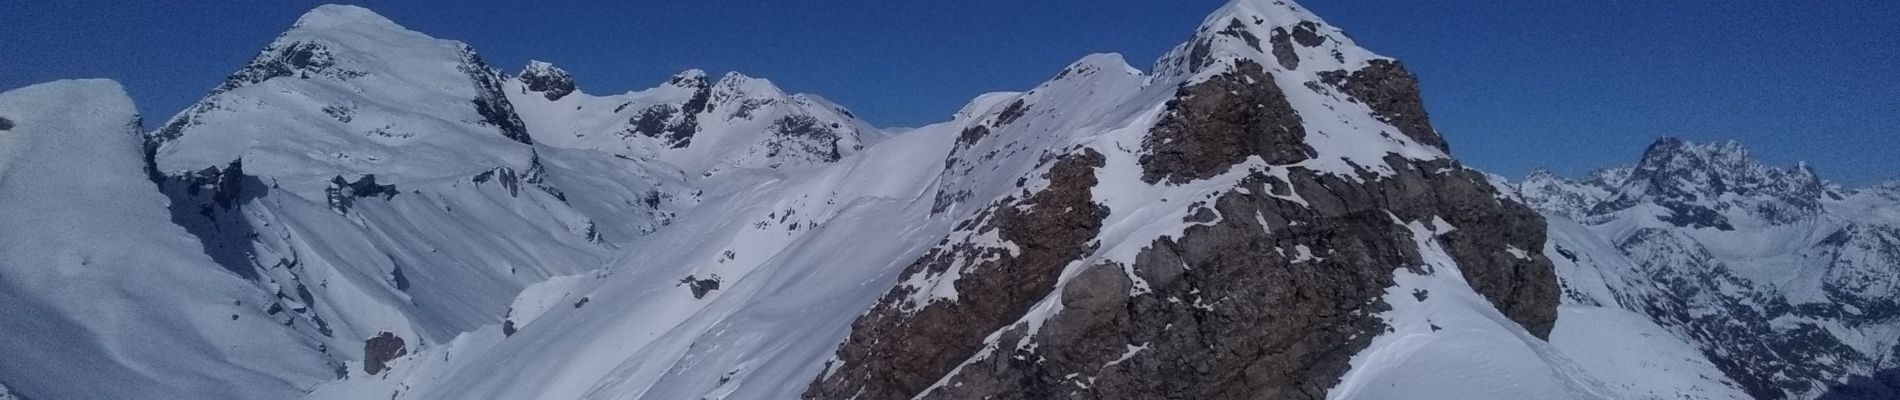 Tour Skiwanderen Saint-Jean-Saint-Nicolas - Soleil boeuf et petite remontée à Prouveyrat - Photo